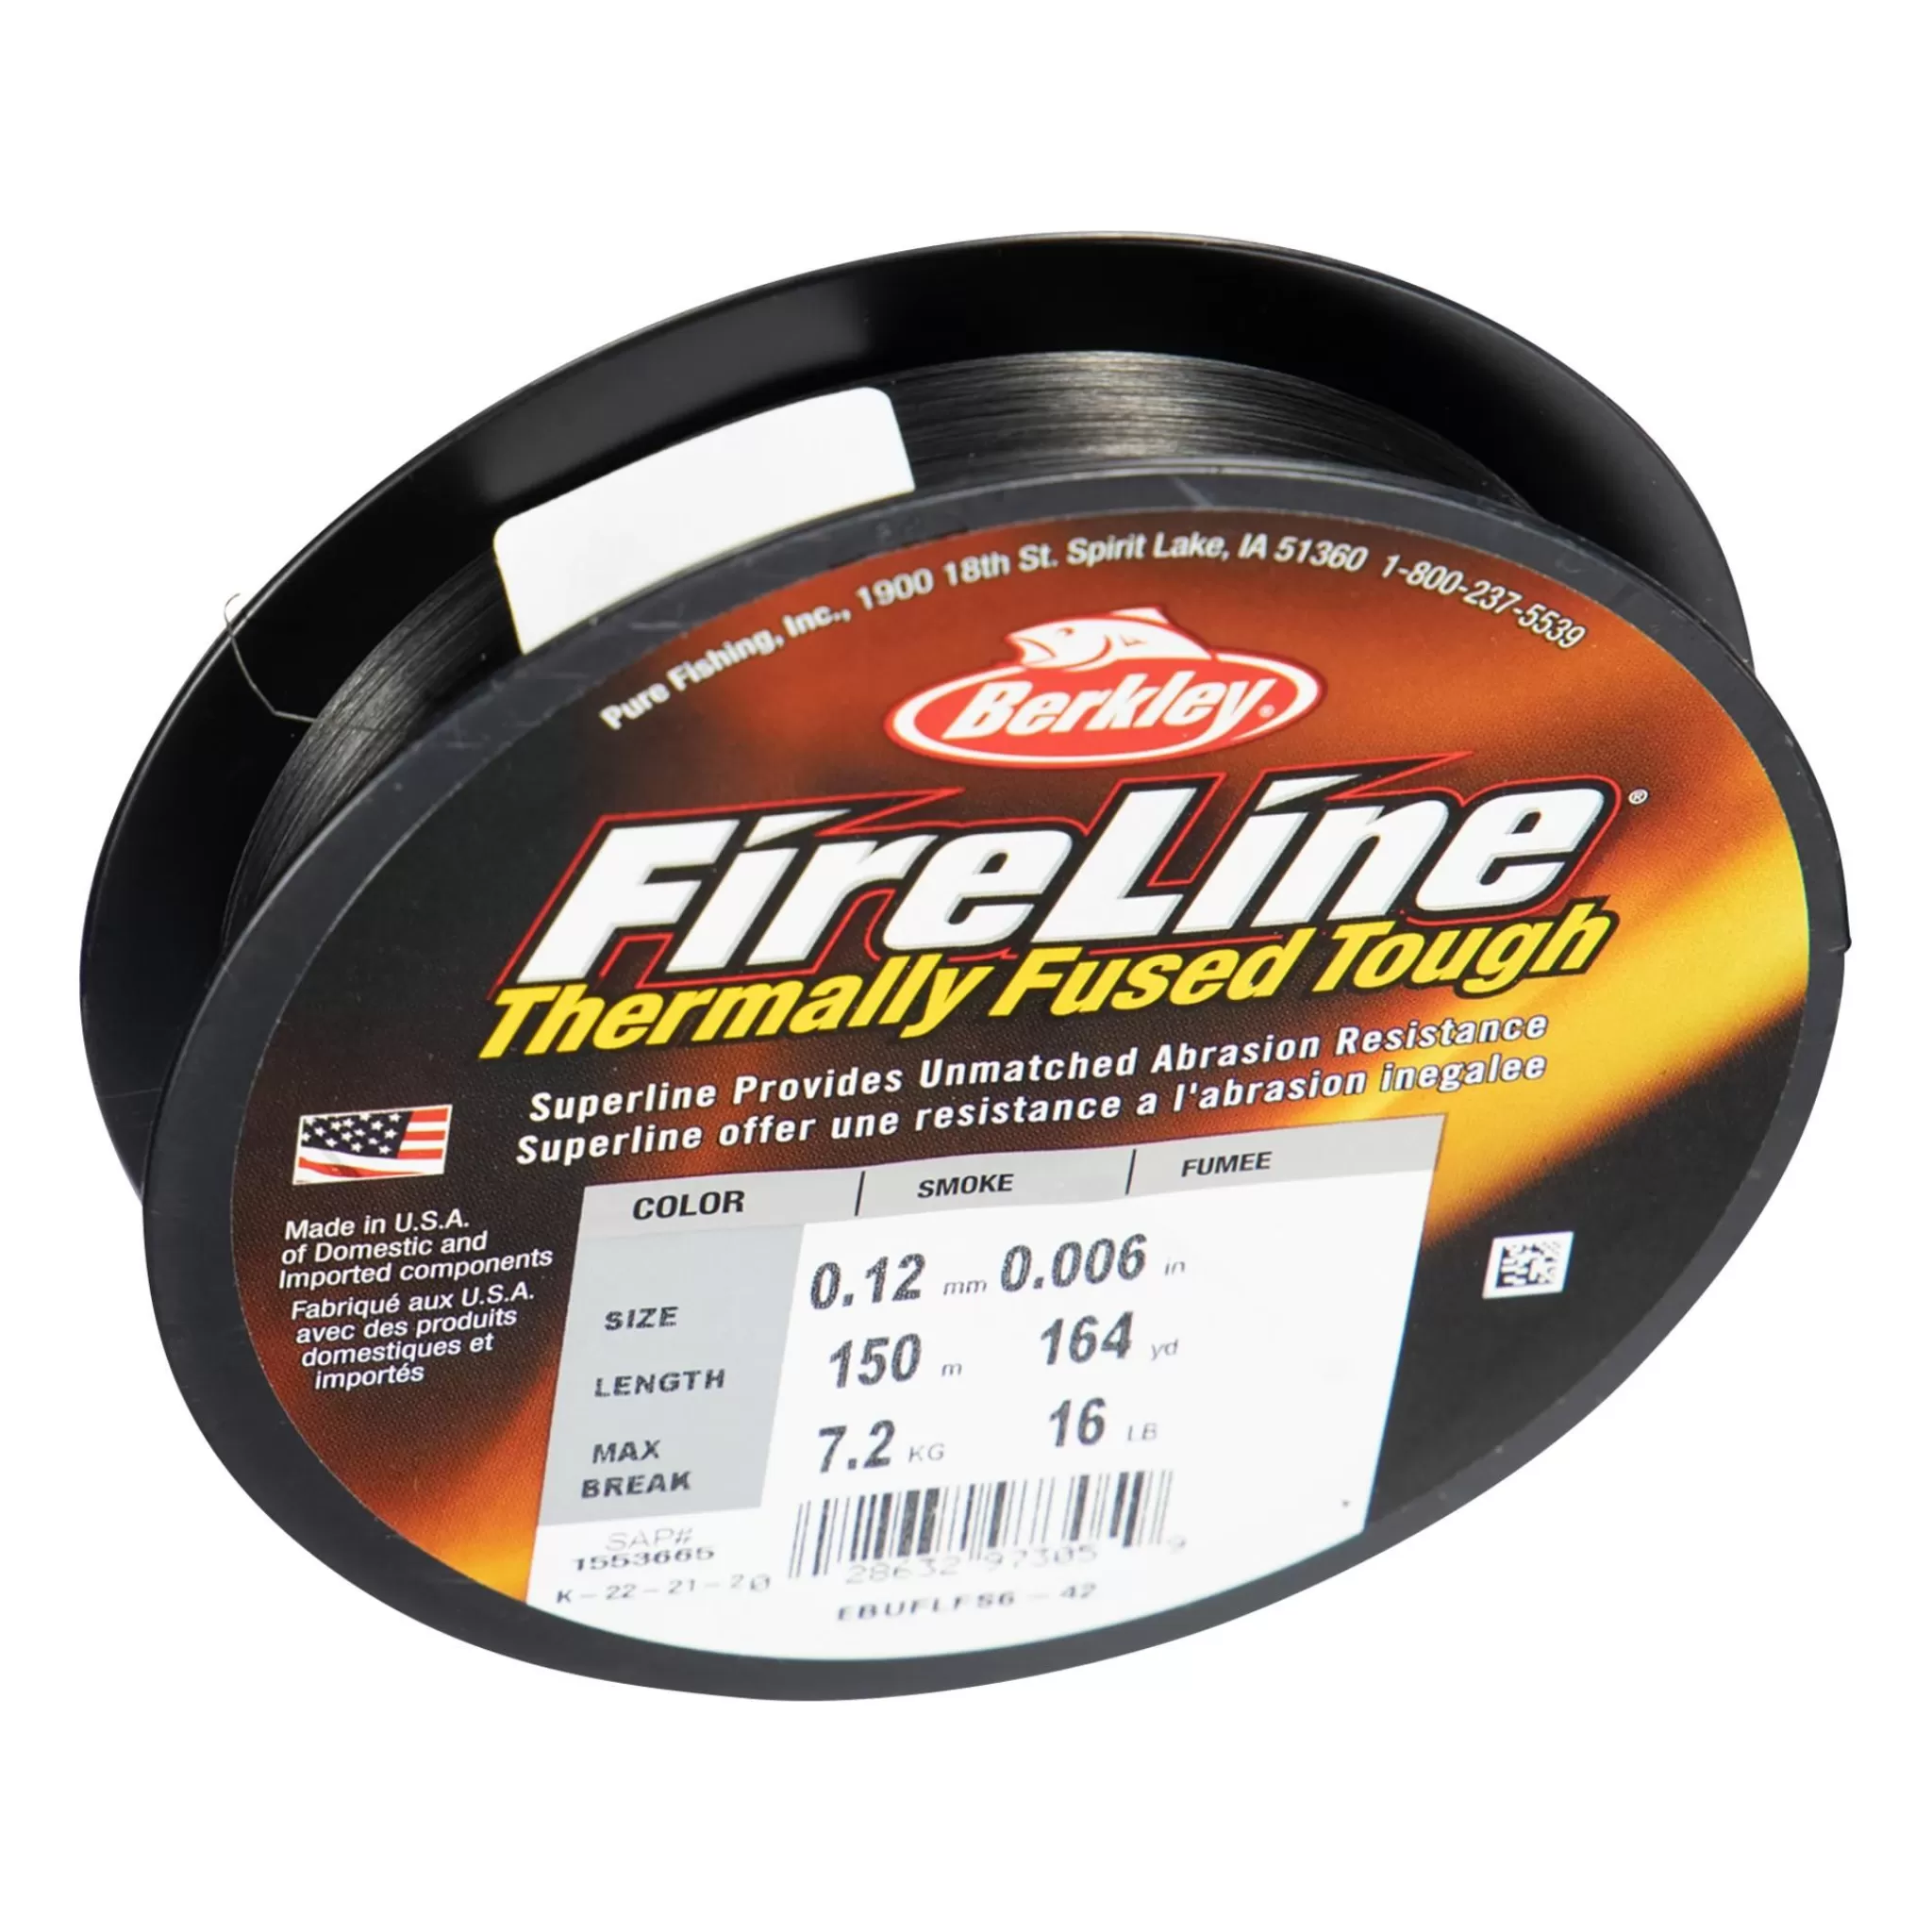 Online berkley Fireline 150M Smoke, Multifilament